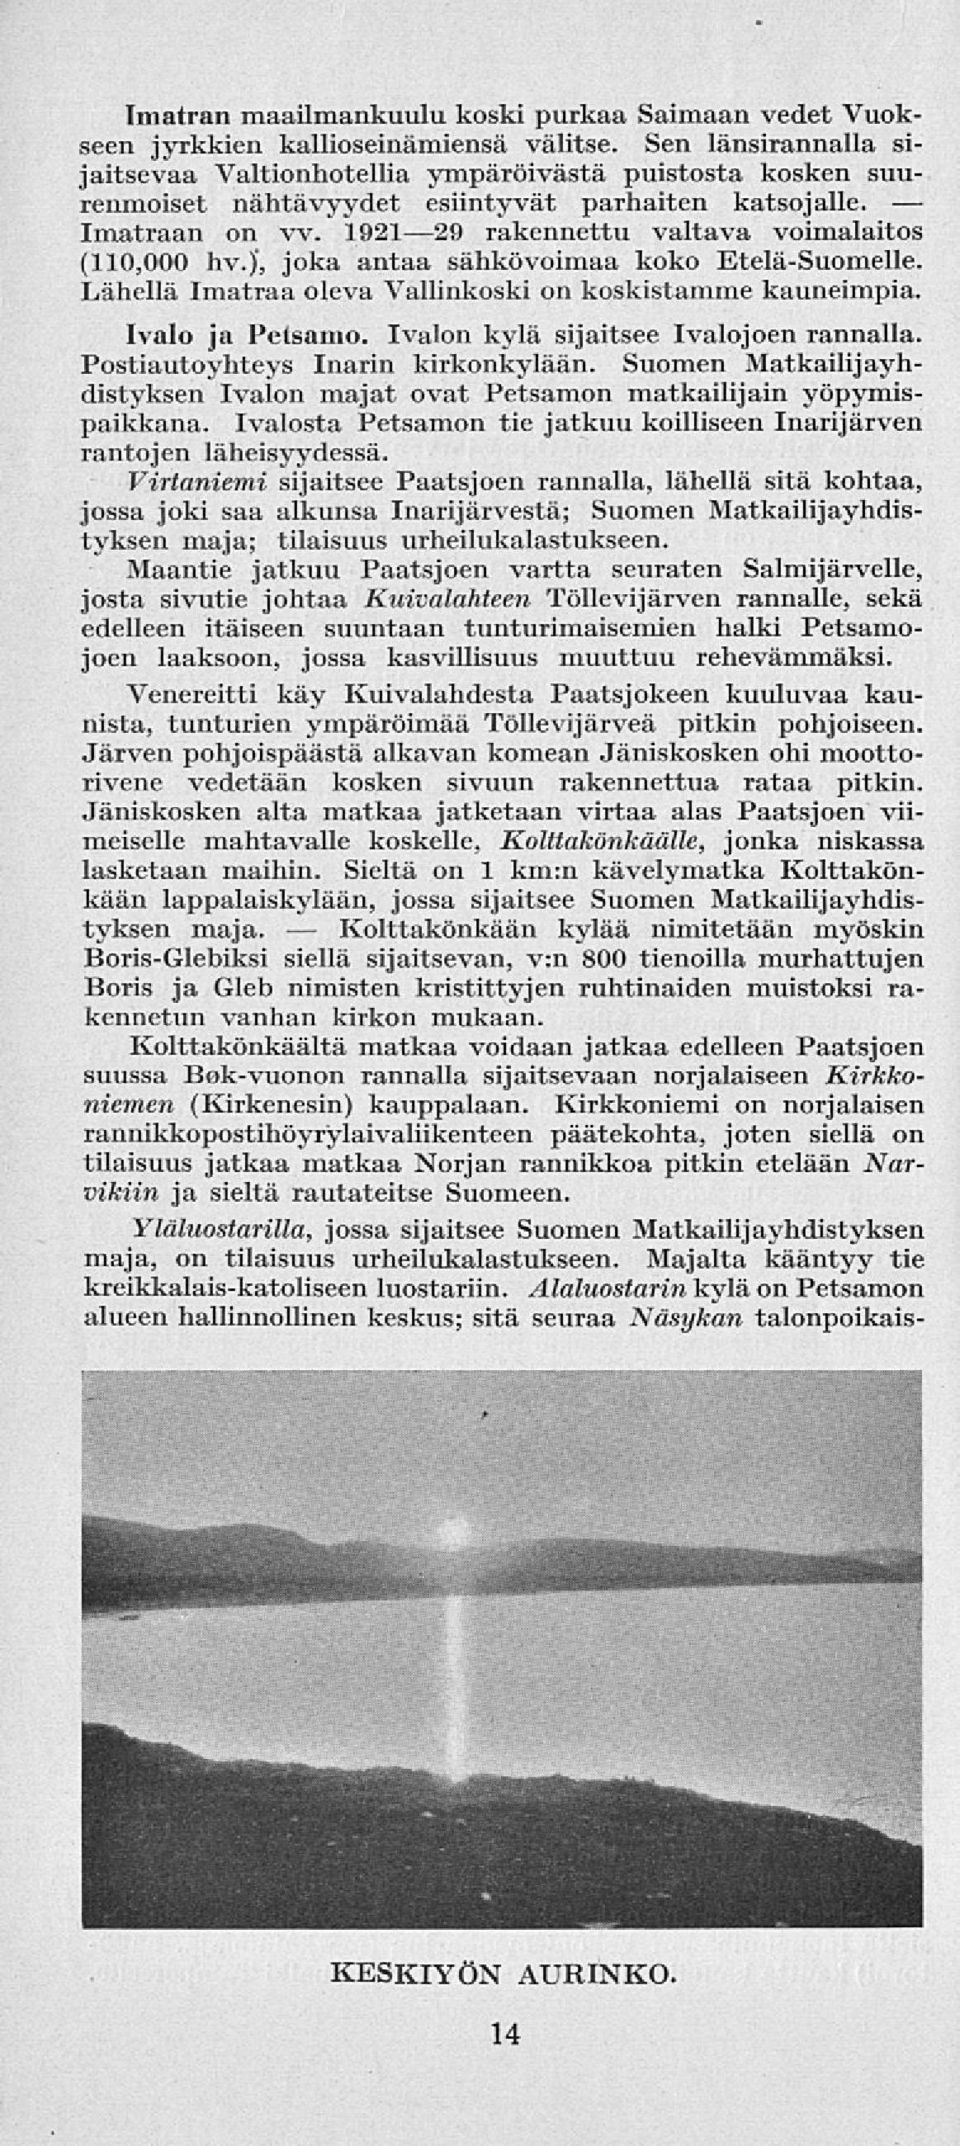 )', joka antaa sähkövoimaa koko Etelä-Suomelle. Lähellä Imatraa oleva Vallinkoski on koskistamme kauneimpia. Ivalo ja Petsamo. Ivalon kylä sijaitsee Ivalojoen rannalla.